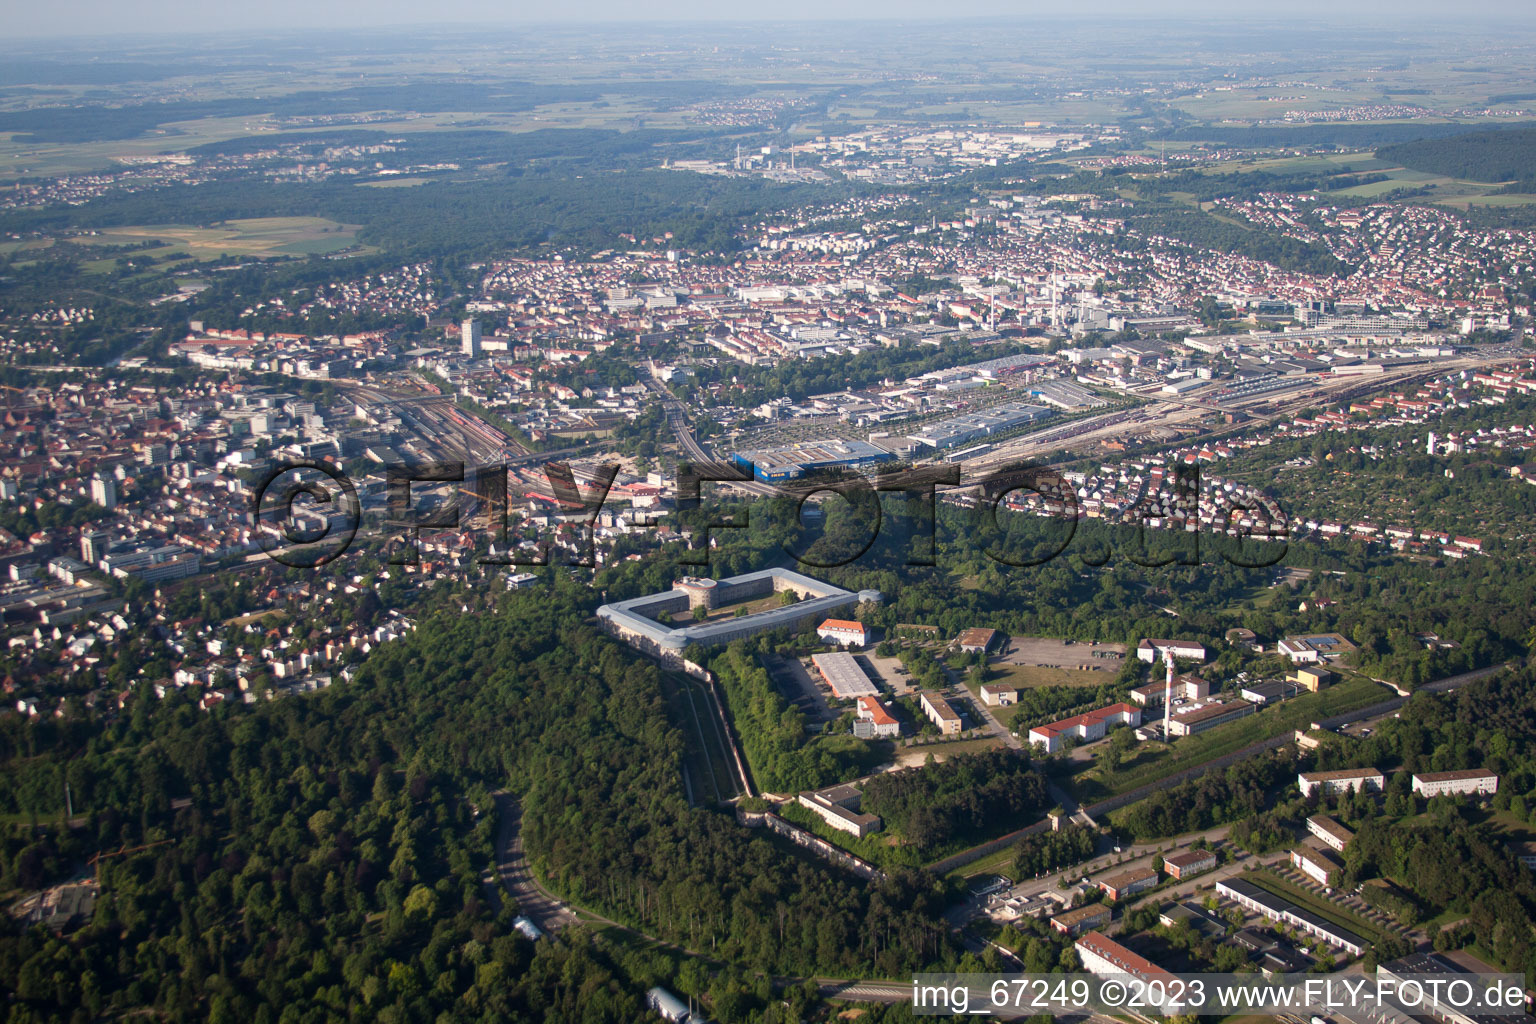 Luftbild von Ulm im Bundesland Baden-Württemberg, Deutschland